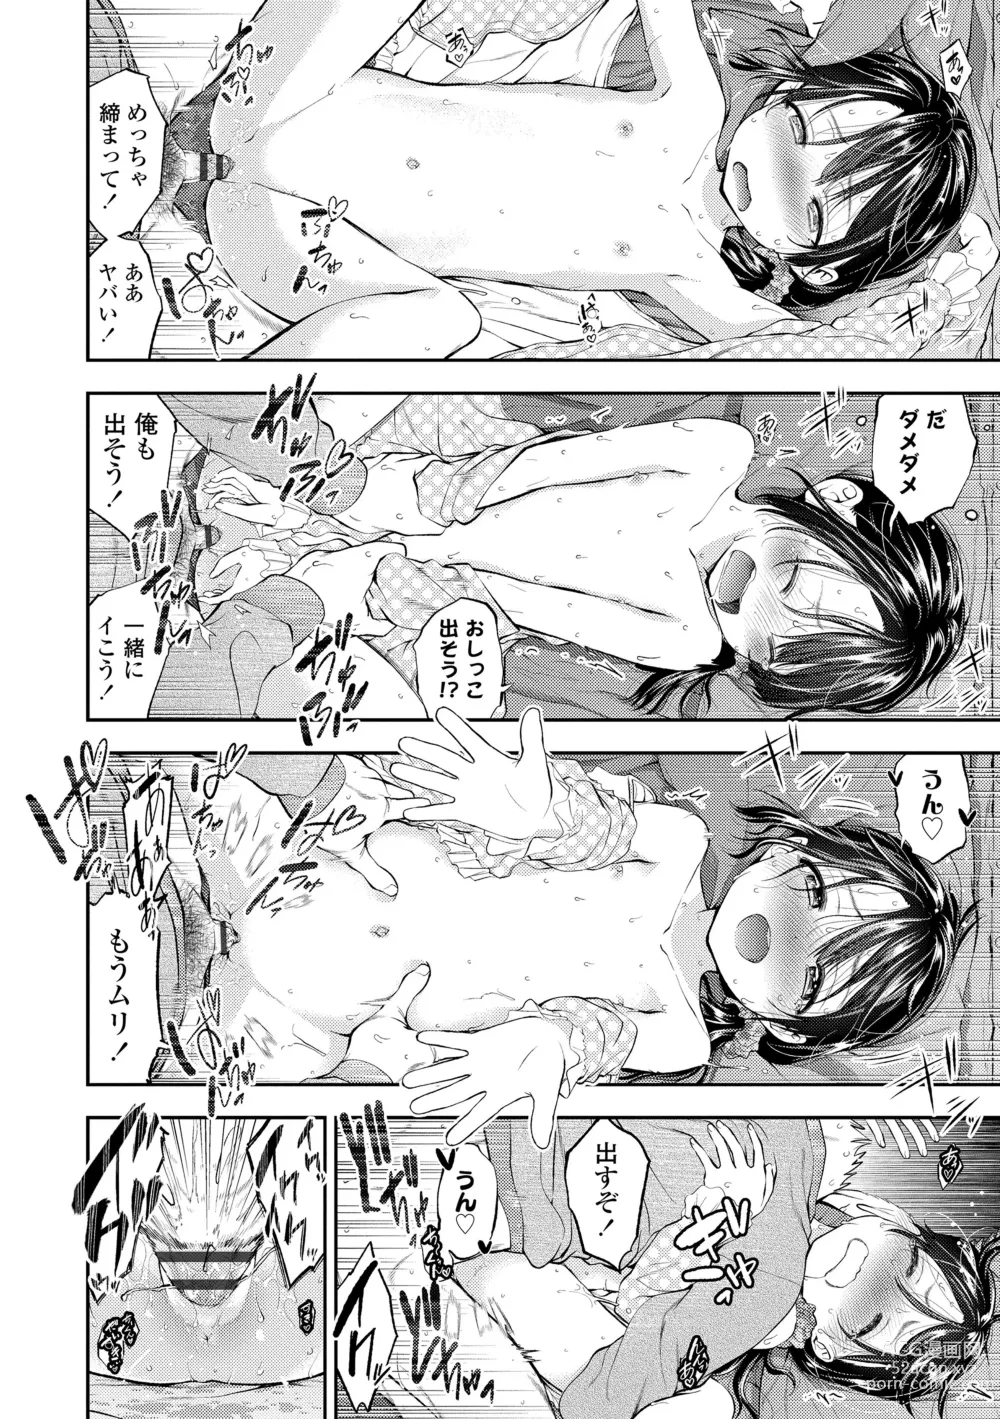 Page 190 of manga Onnanoko ni Shite yo - Make me your first lover.